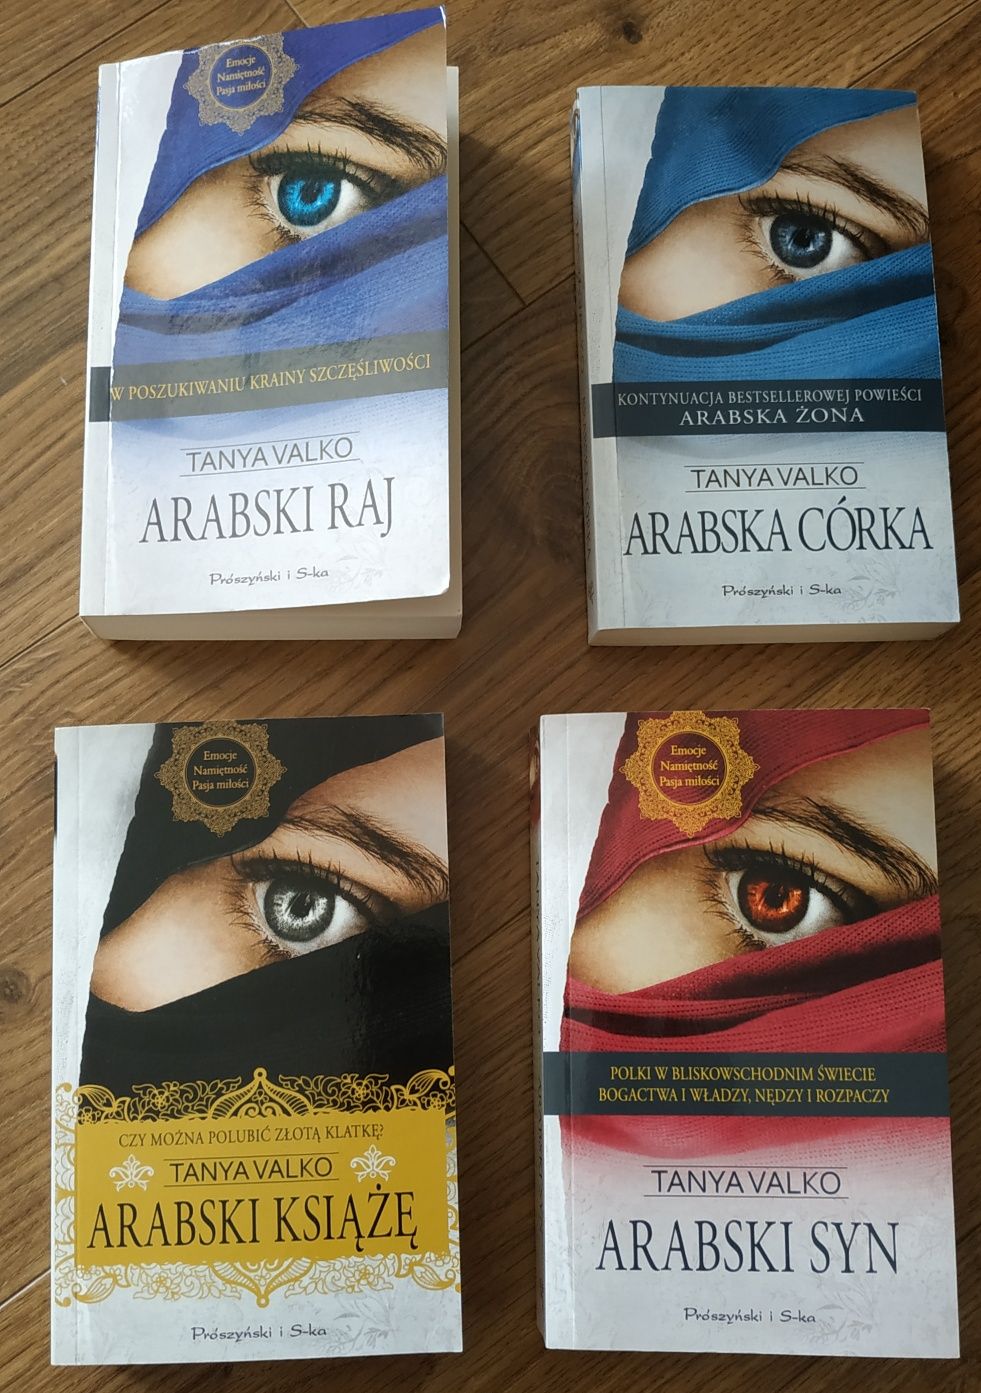 Książki "Arabska córka", "Arabski syn", "Arabski raj", "Arabski książę